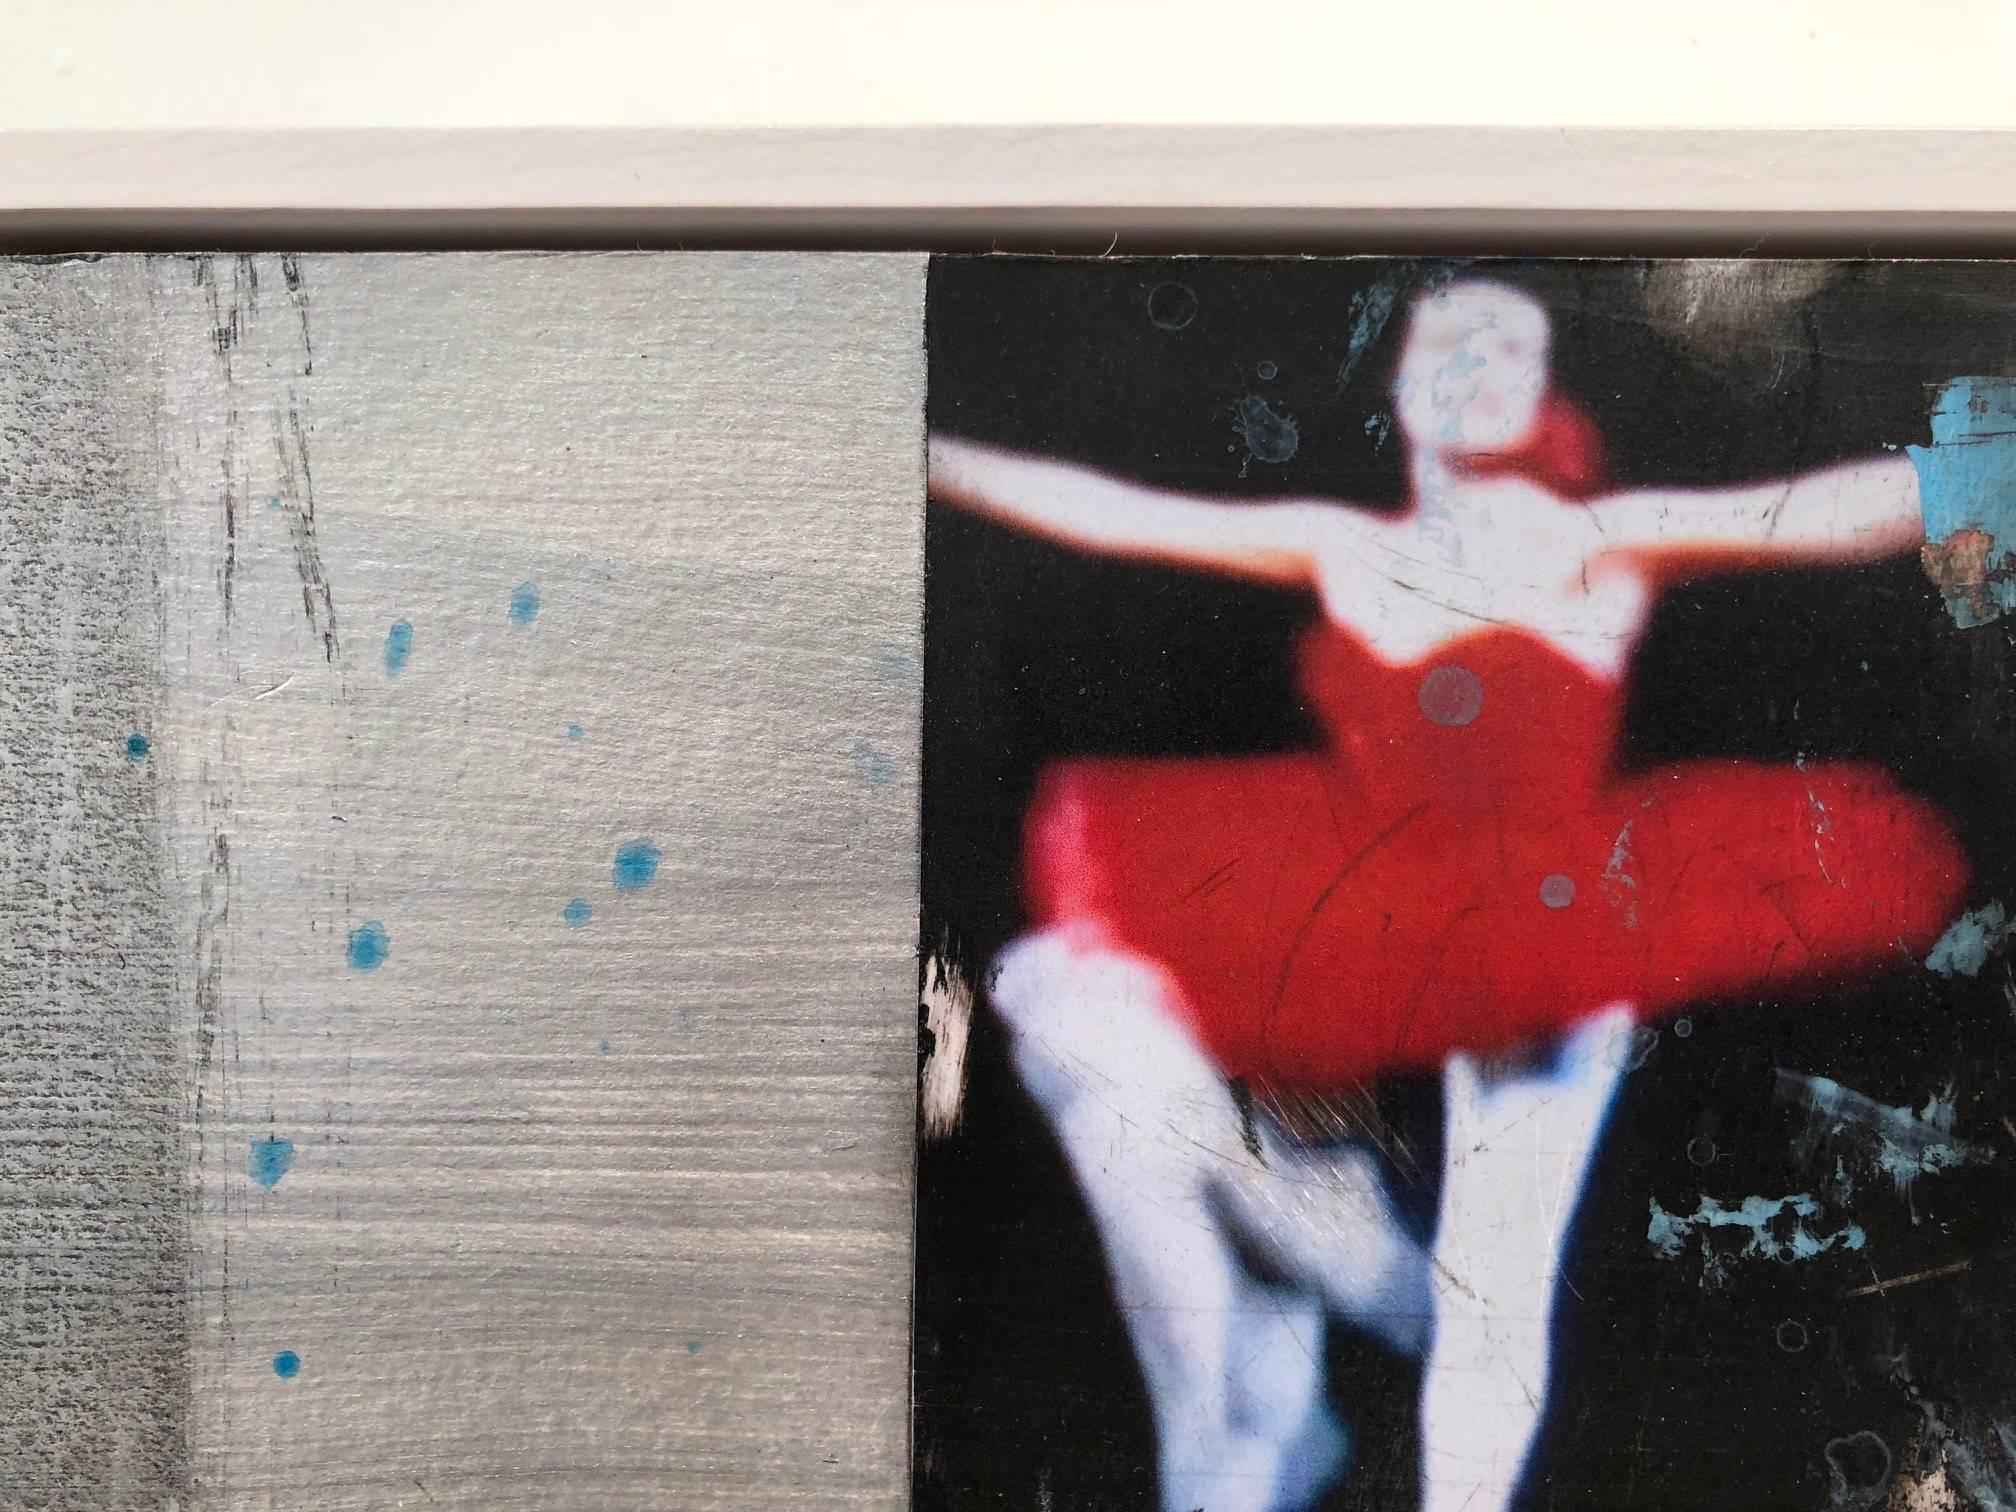 Danseuse de ballet en rouge dans « Double-Ticket Silverscreen » de l'artiste visuel multidisciplinaire Kim Frohsin, qui a créé la série « Dancers and Athletes » à partir d'une variété de médias - peinture acrylique, glaçures, encre, collage, crayons